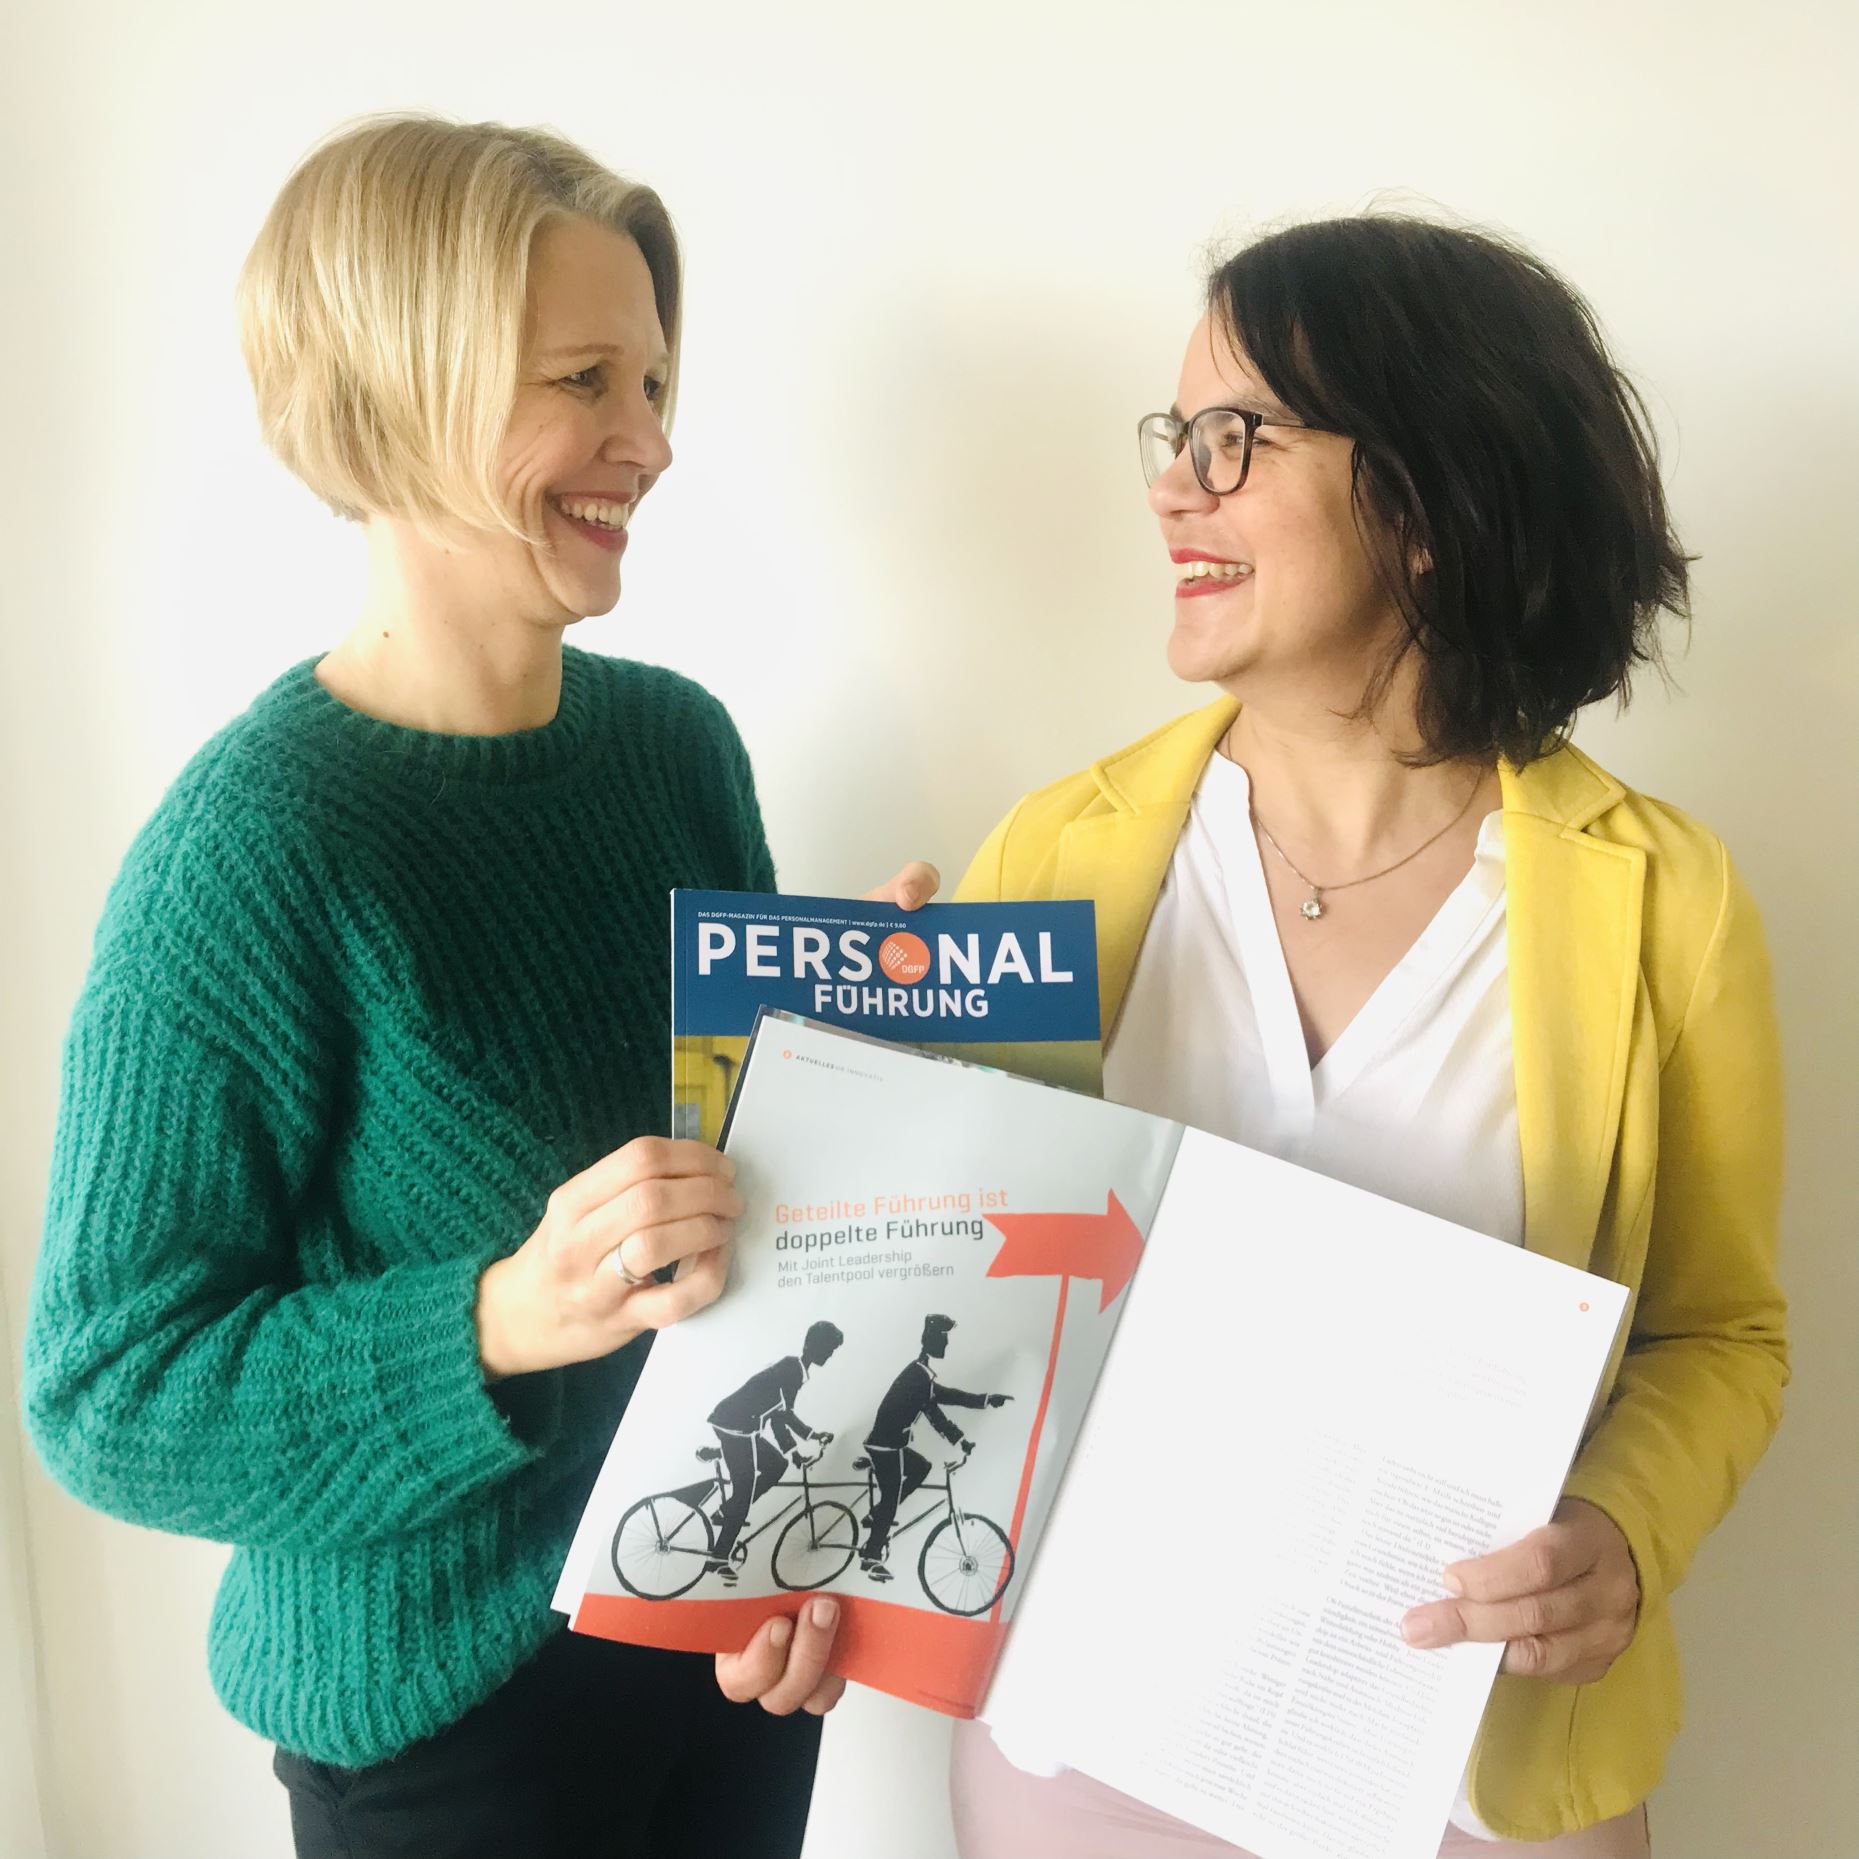 Carolin Weigel und Esther Himmen halten ein Exemplar des Magazins "Personalführung"